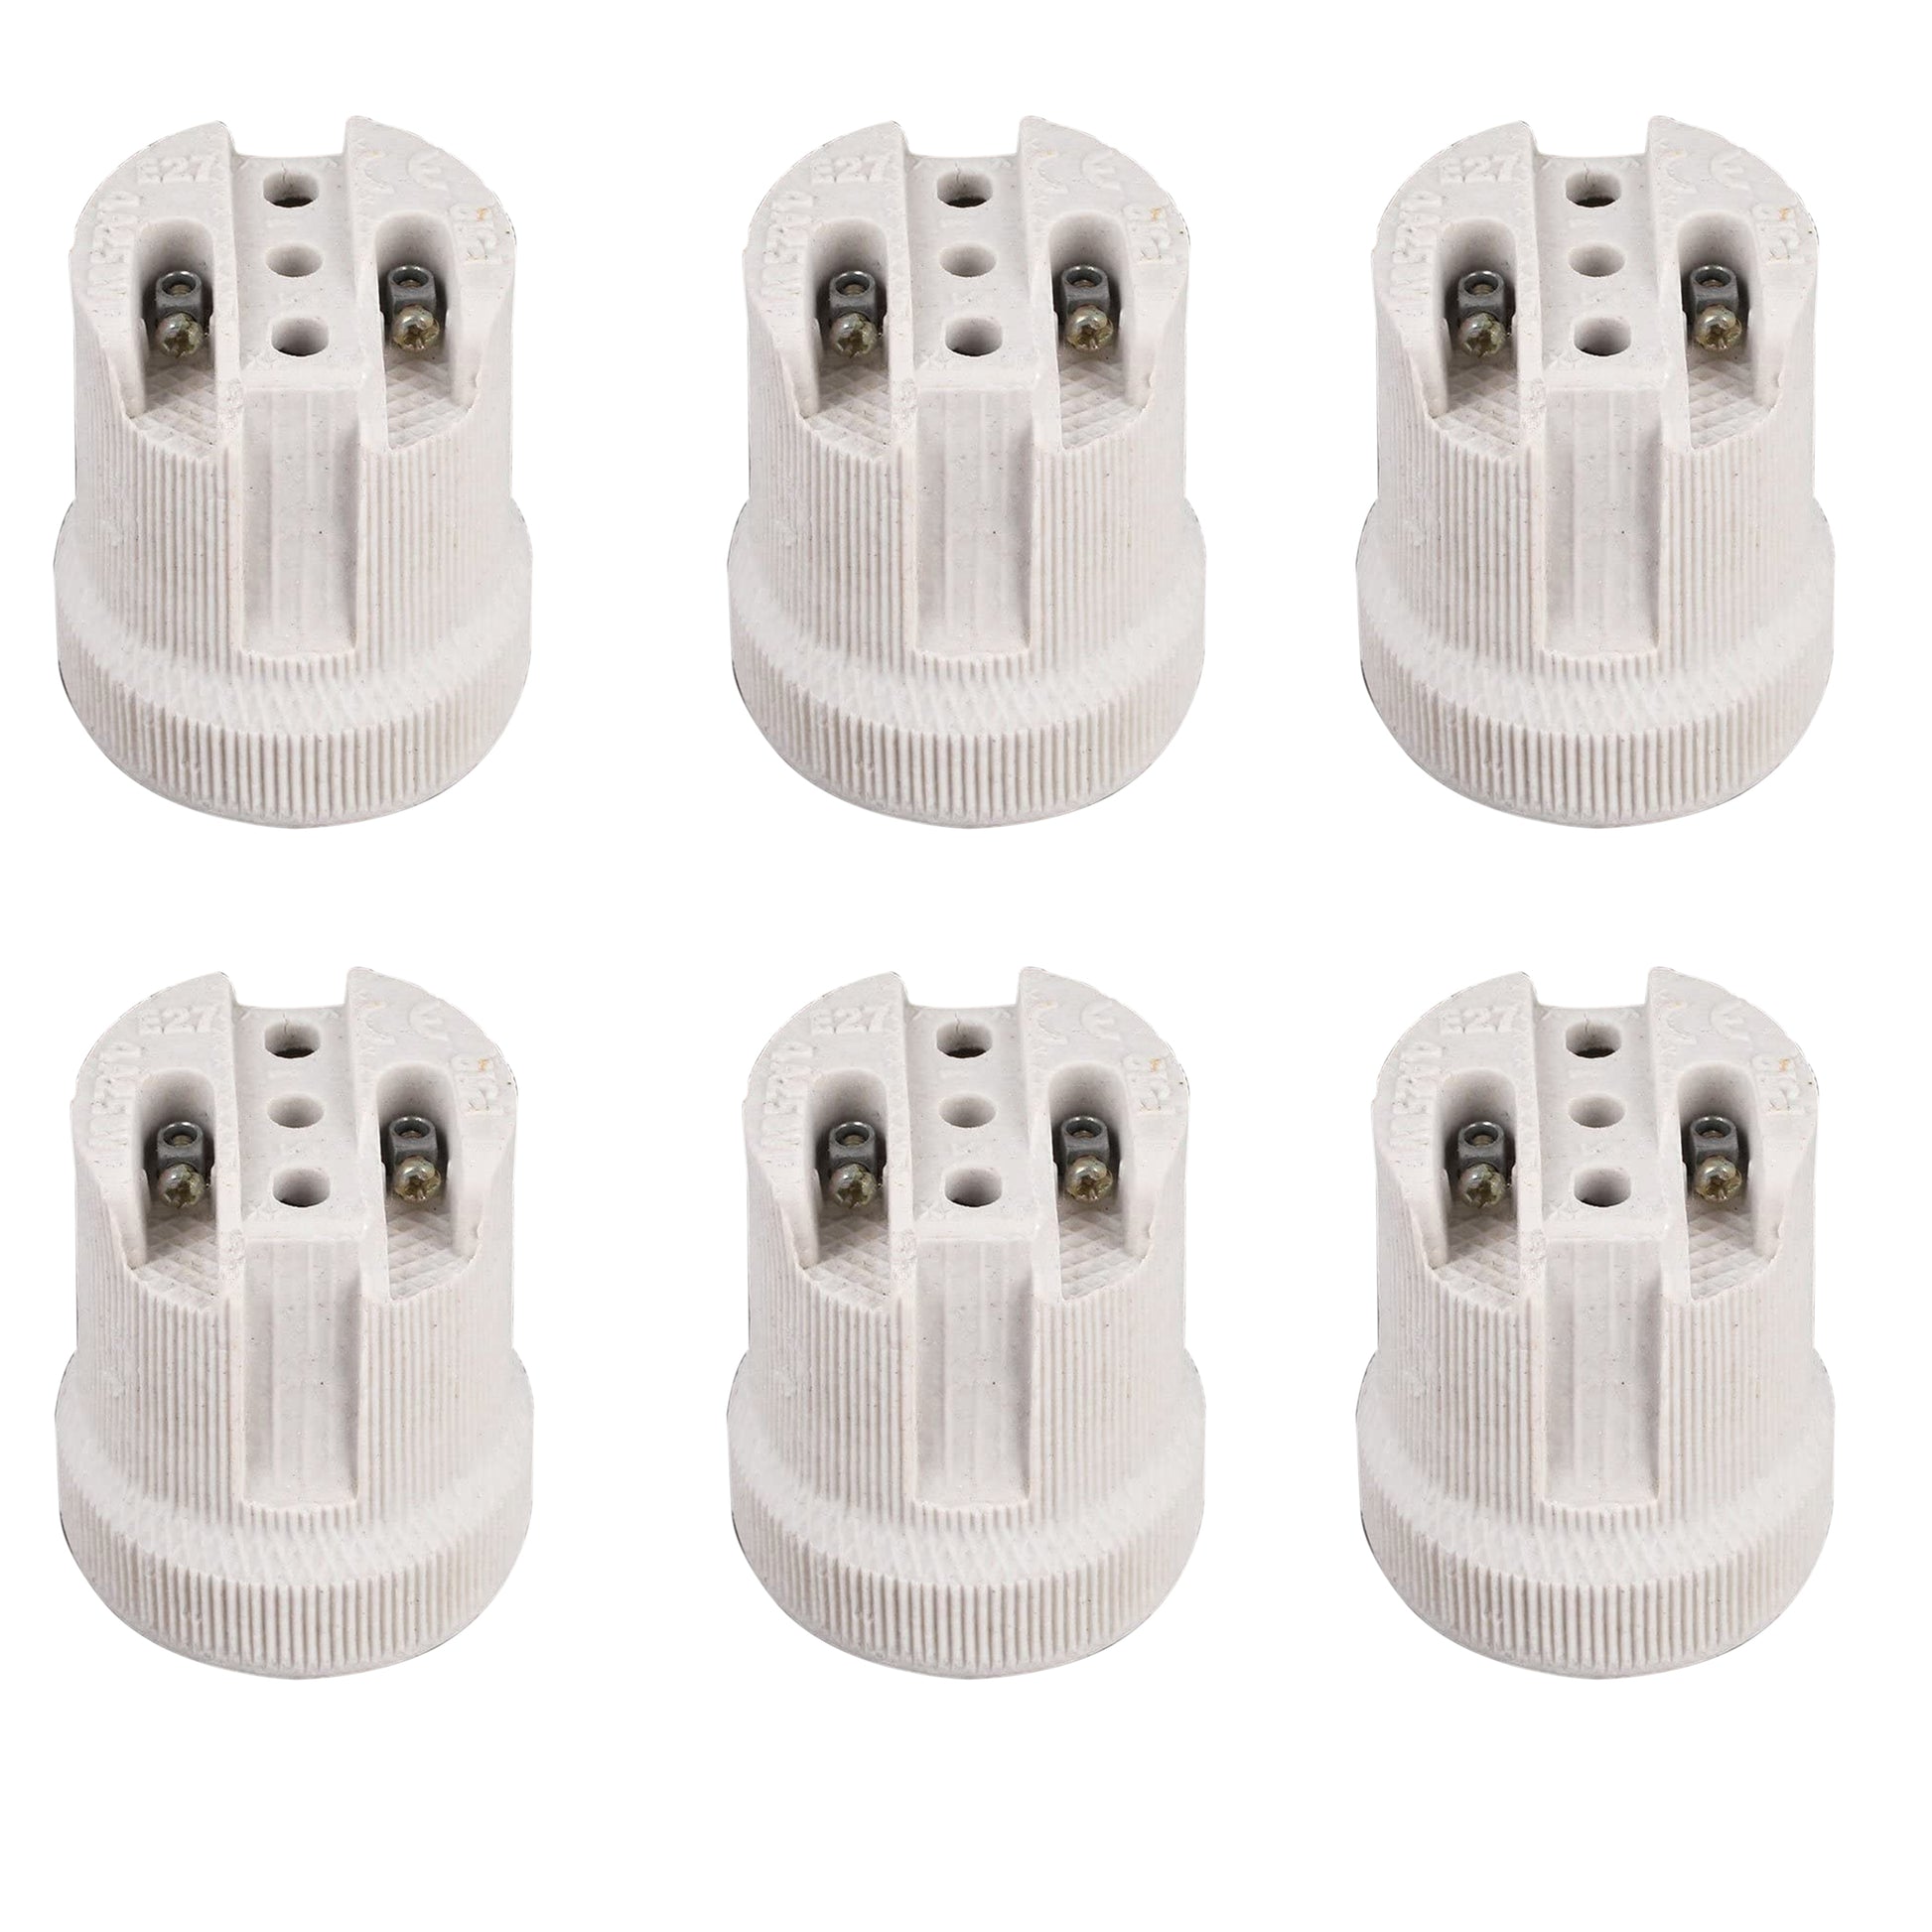 6 pack E27 Ceramic  Heat resistance lamp bulb holder